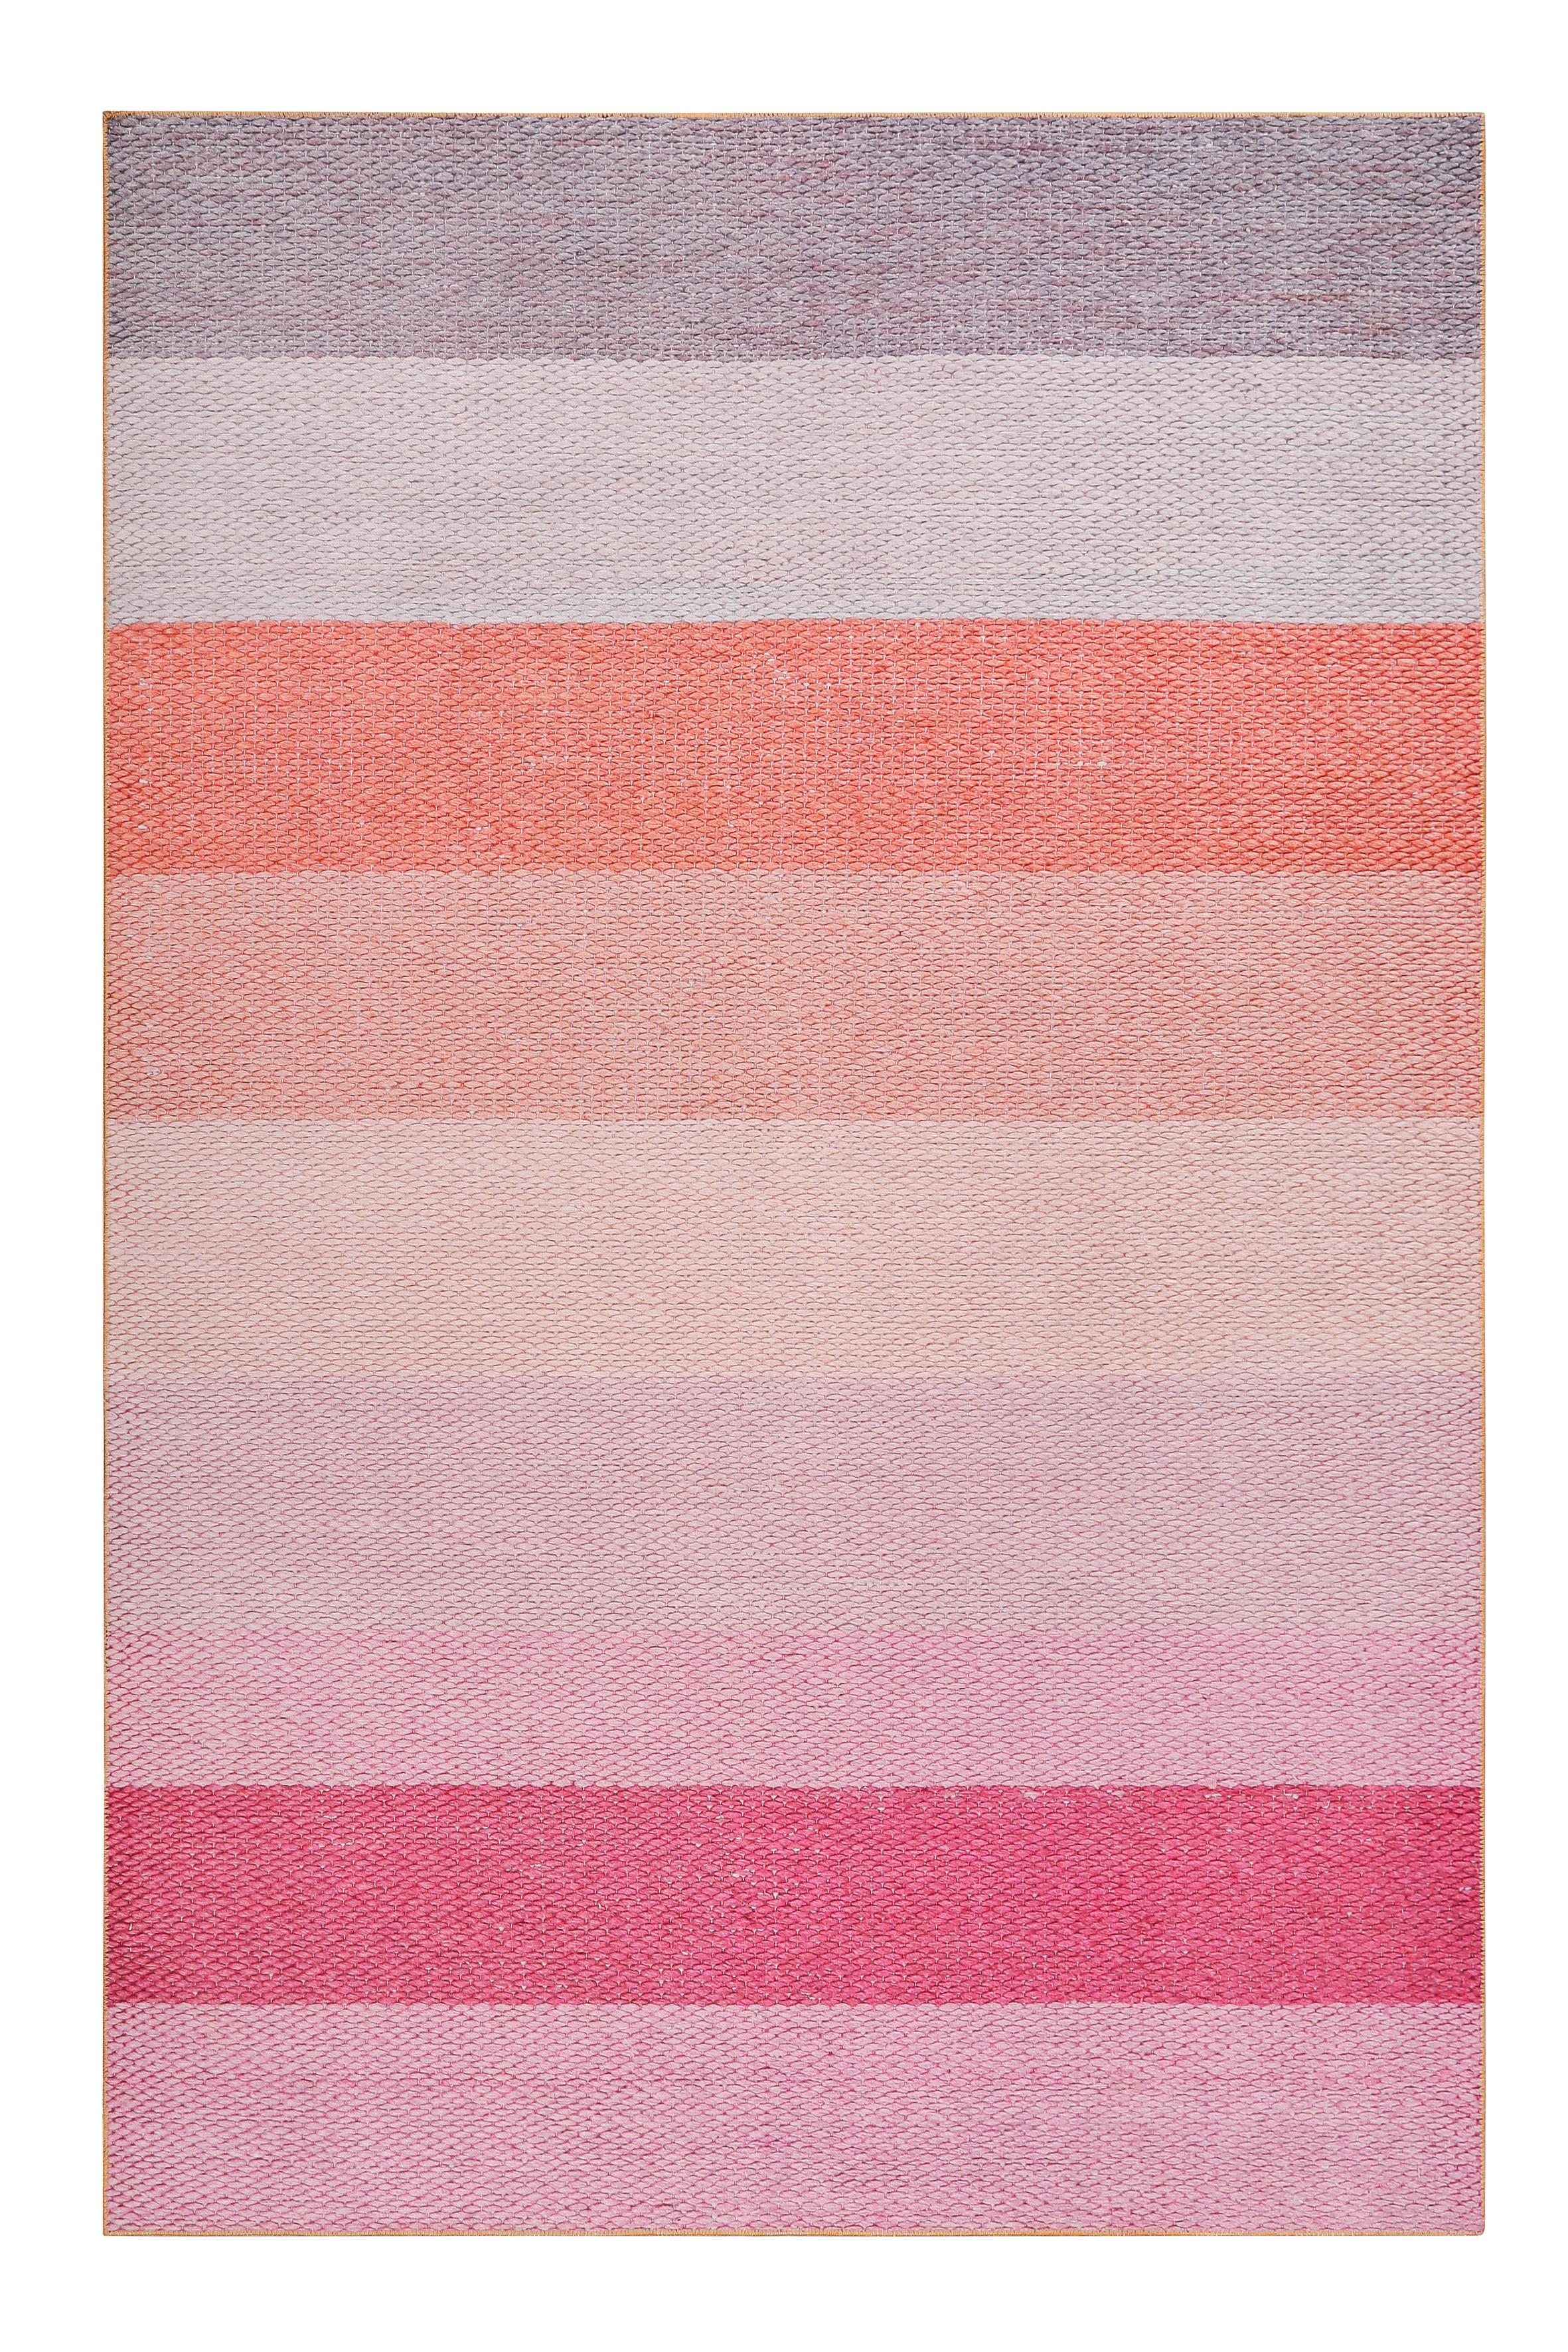 Flachwebteppich Clifton Grau/Orange/Rosa 60x100 cm - Pink/Orange, KONVENTIONELL, Textil (60/100cm) - Esprit